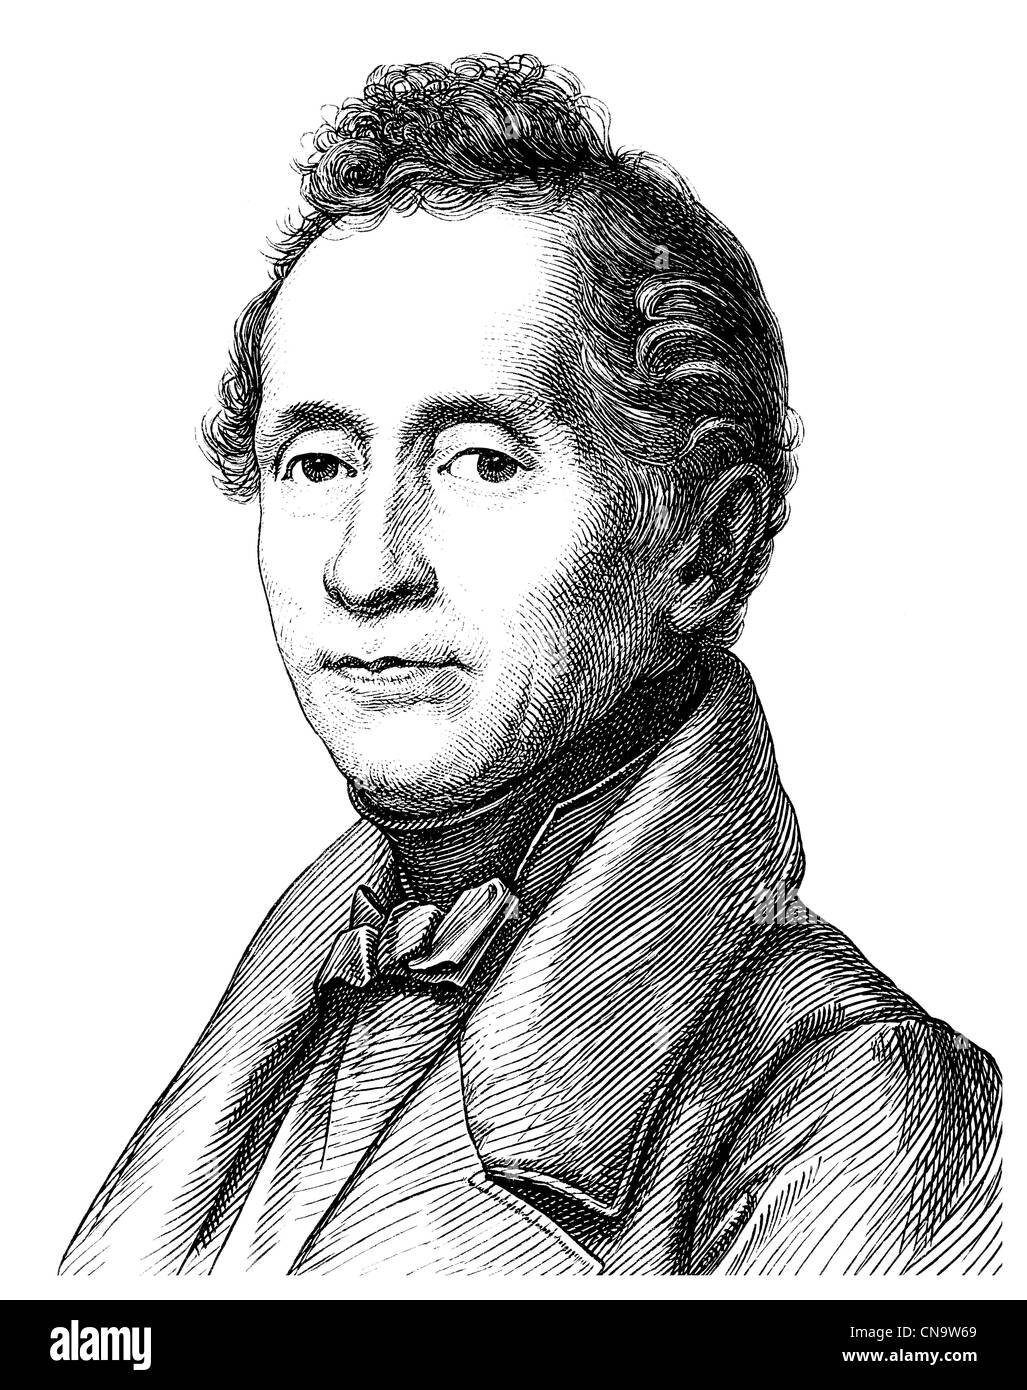 Dimensions historiques, Joseph Karl Benedikt Freiherr von Eichendorff, 1788 - 1857, poète et écrivain du romantisme allemand Banque D'Images